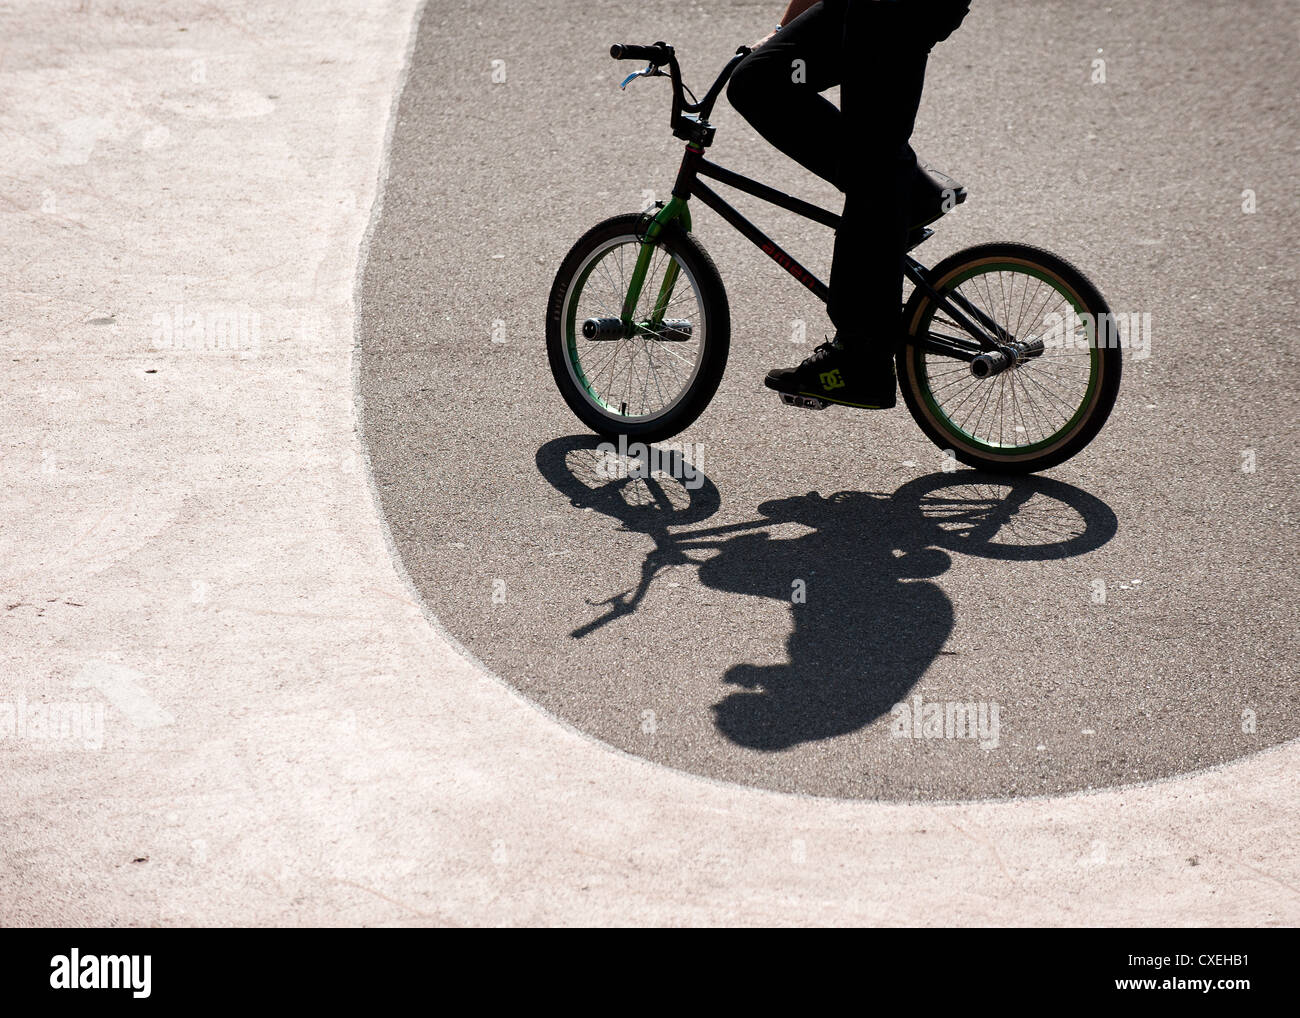 Eine Person auf einem BMX Fahrrad Reiten Stockfoto